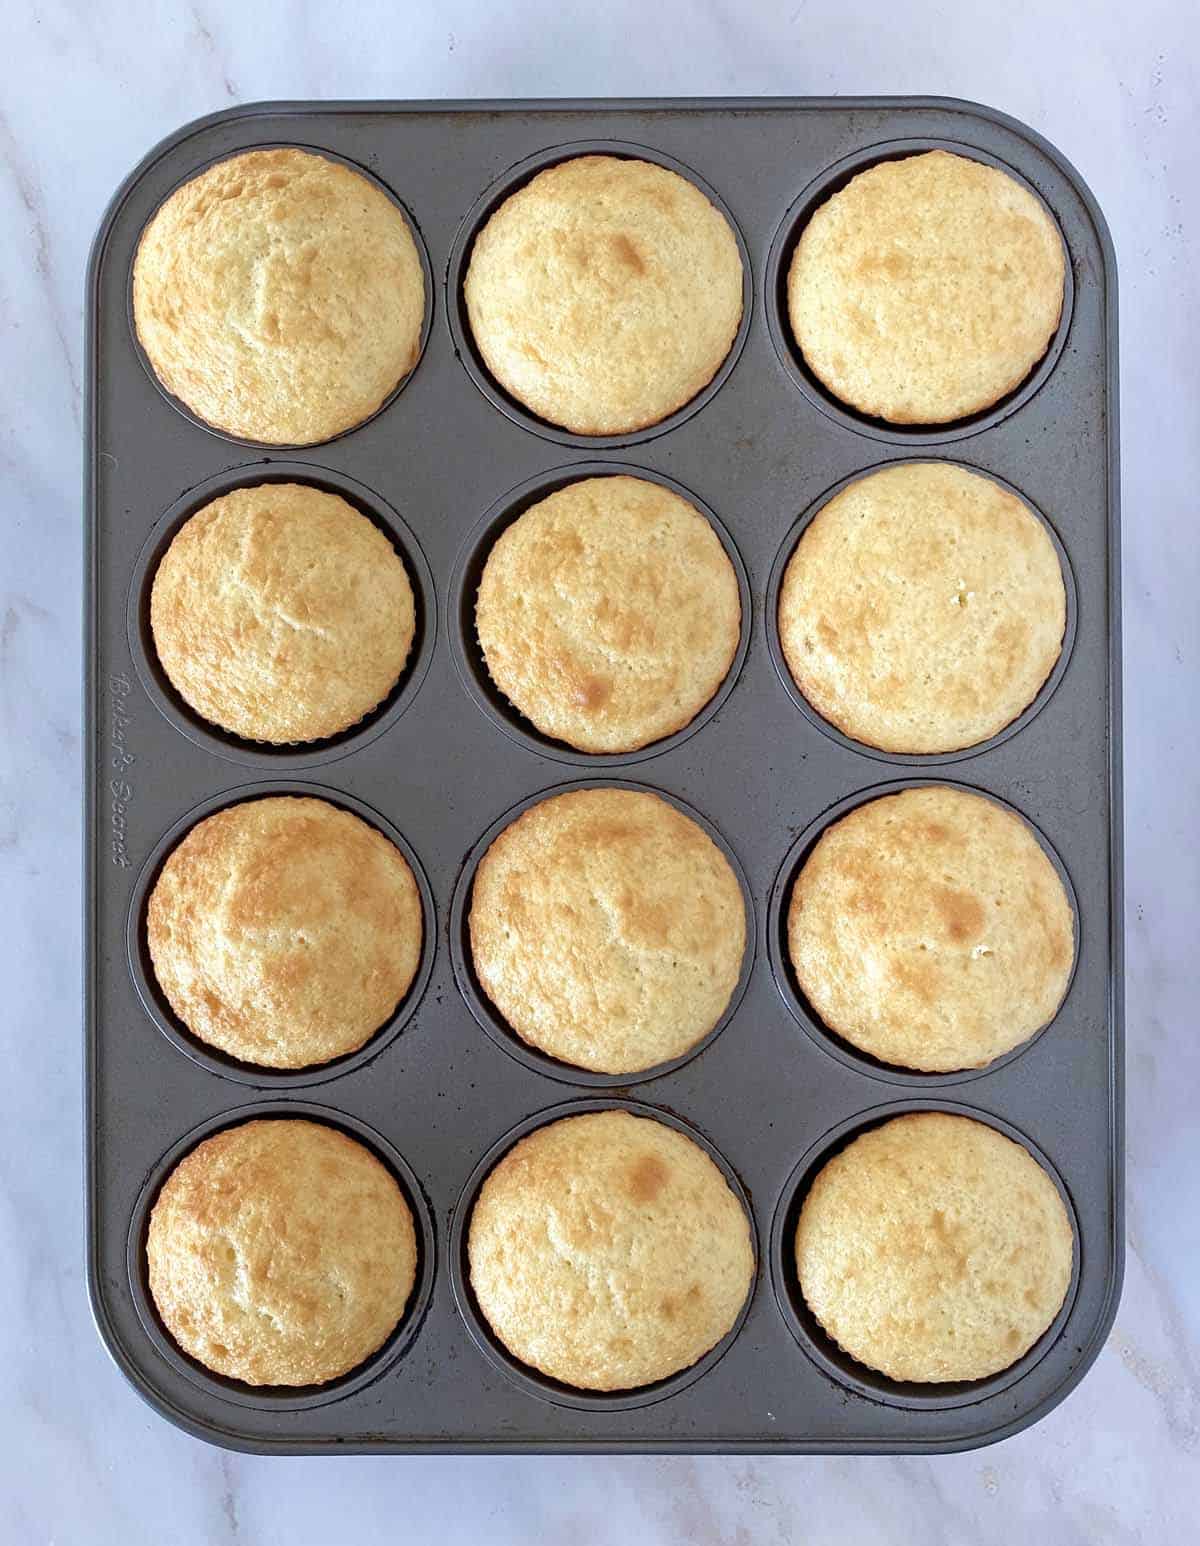 A dozen golden brown baked cupcakes in a cupcake pan.